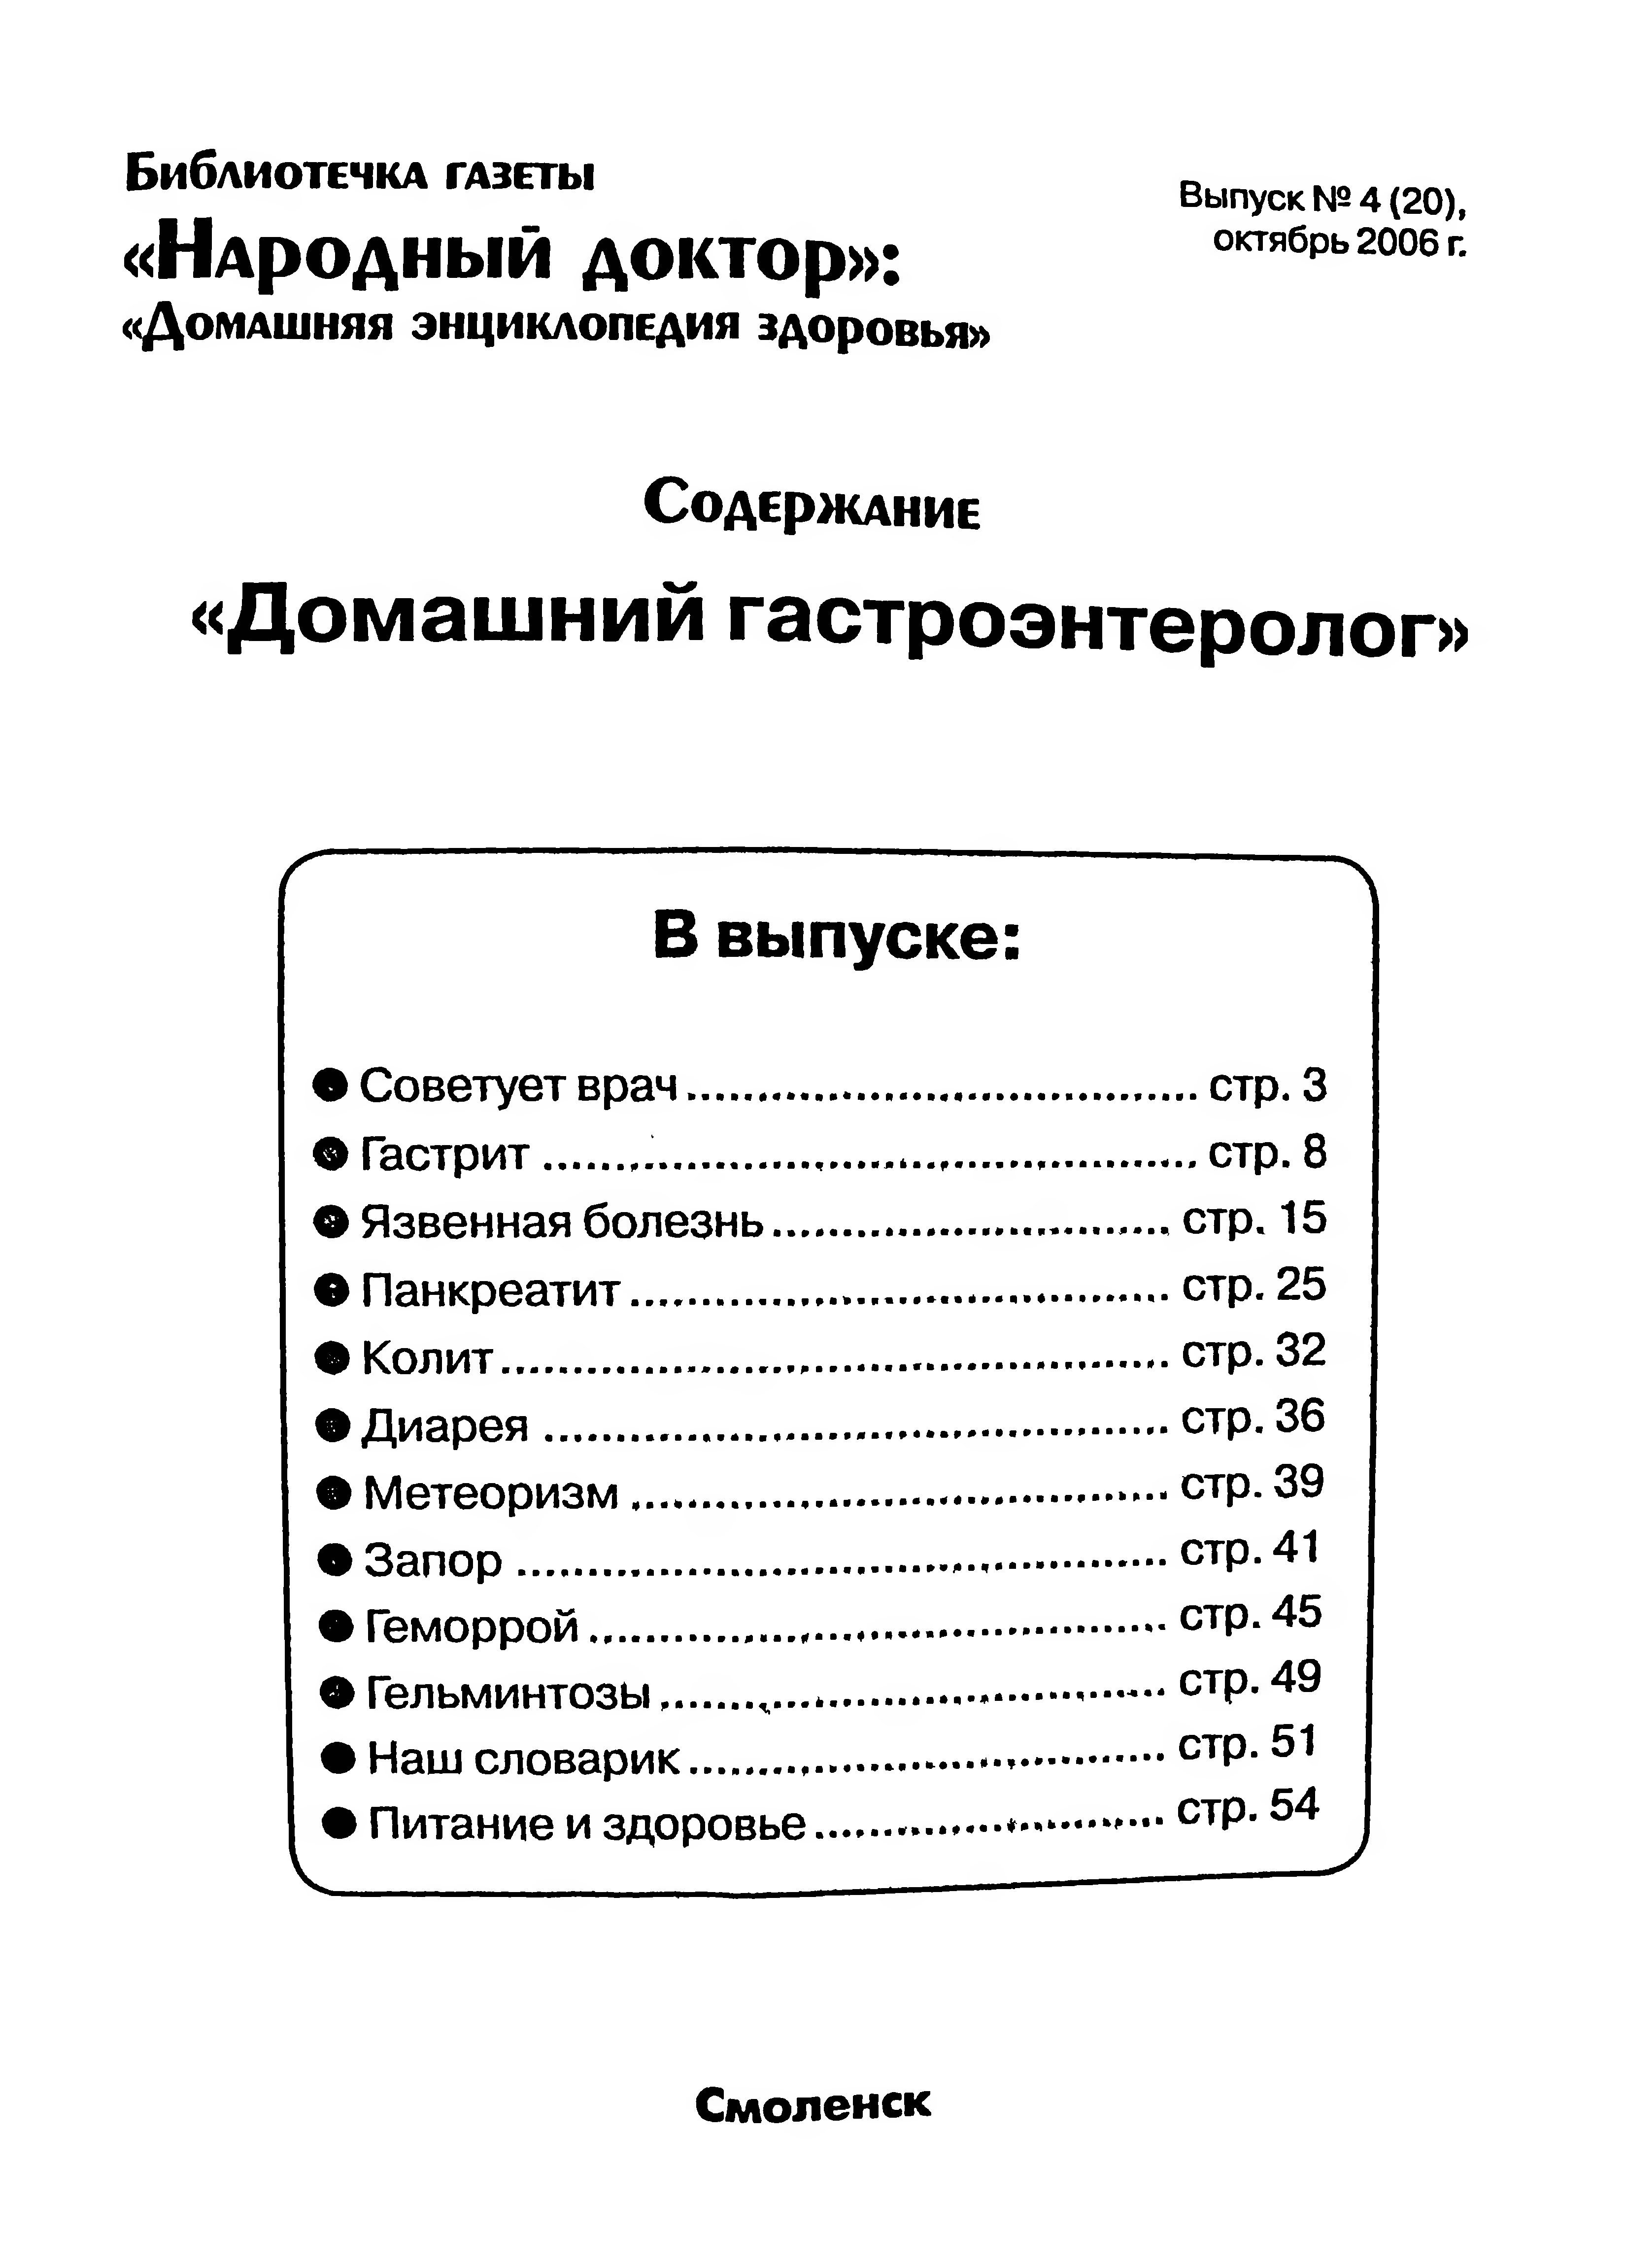 Гастроэнтеролог книга. Книга гастроэнтеролога. Энциклопедия здоровья.